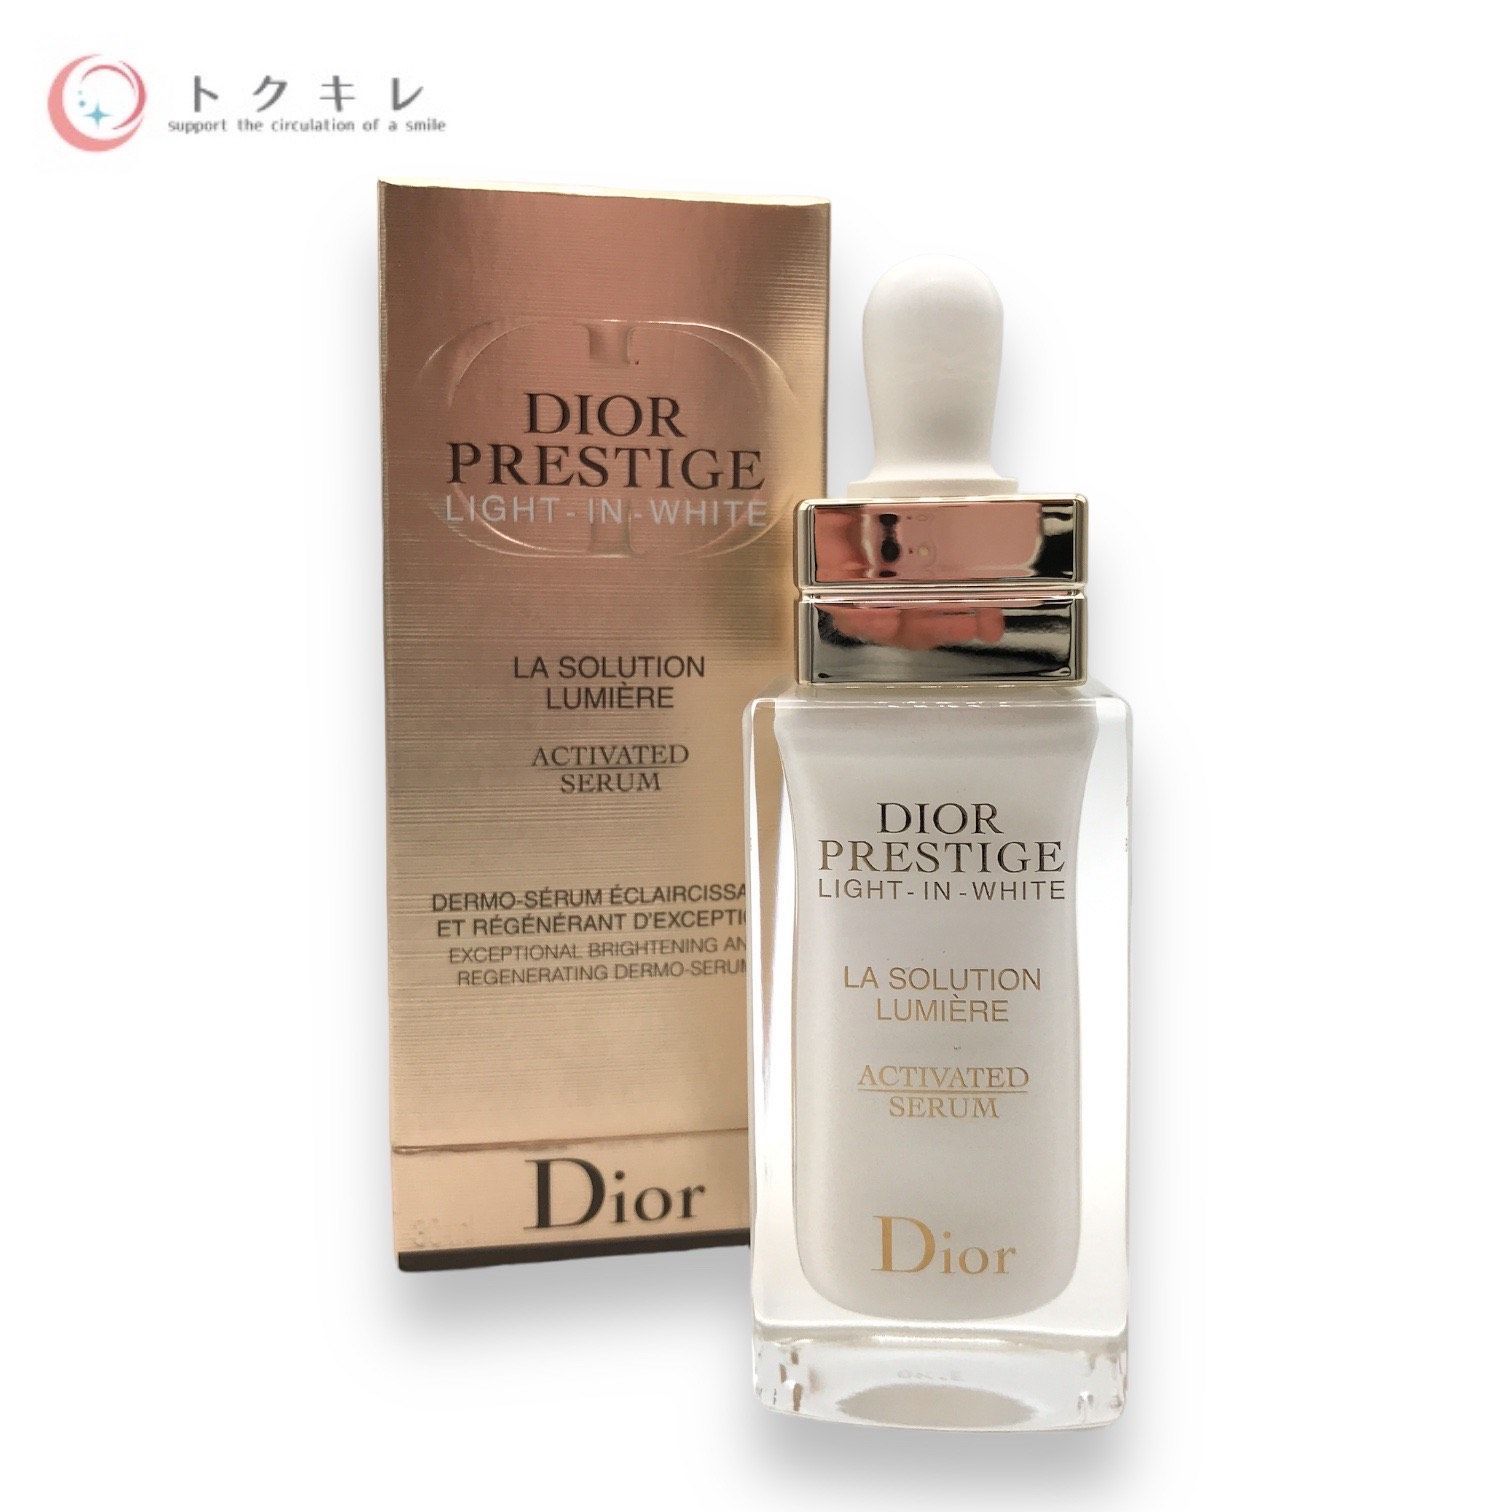 コスメ/美容Dior プレステージ ホワイト ラ ソリューション ルミエール - 美容液